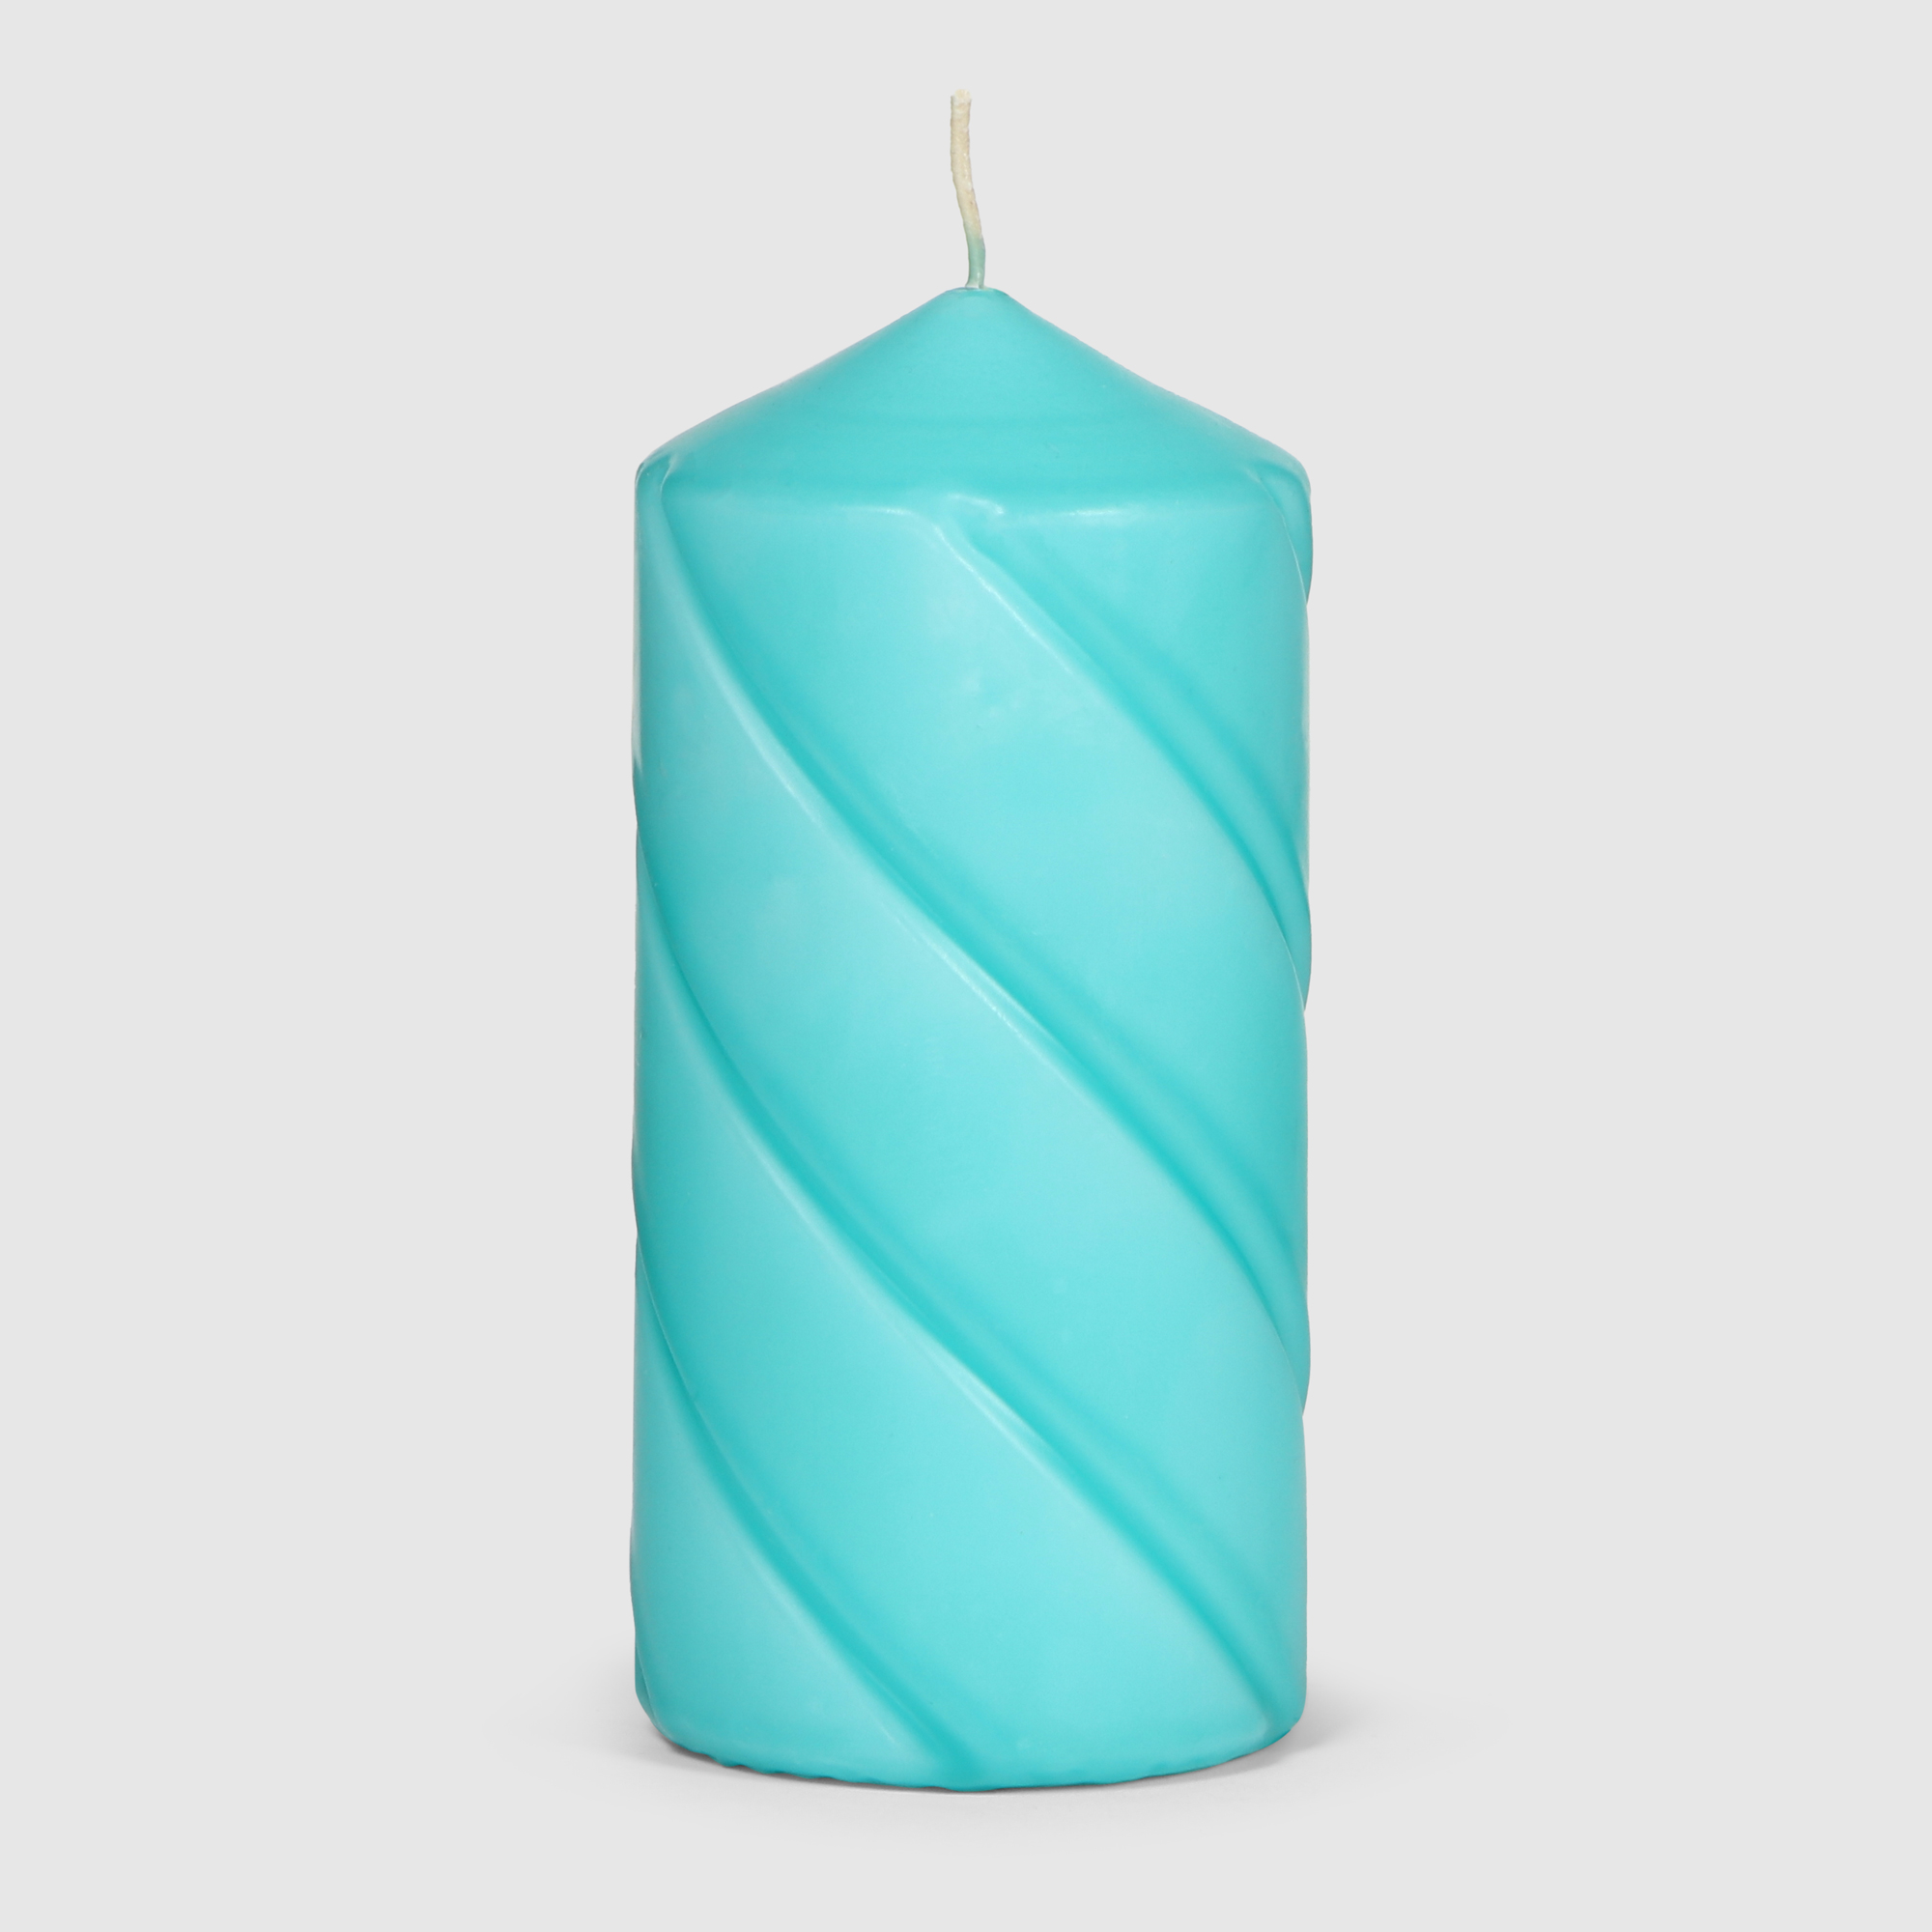 Свеча столбик витой Home Interiors голубой 7х15 см